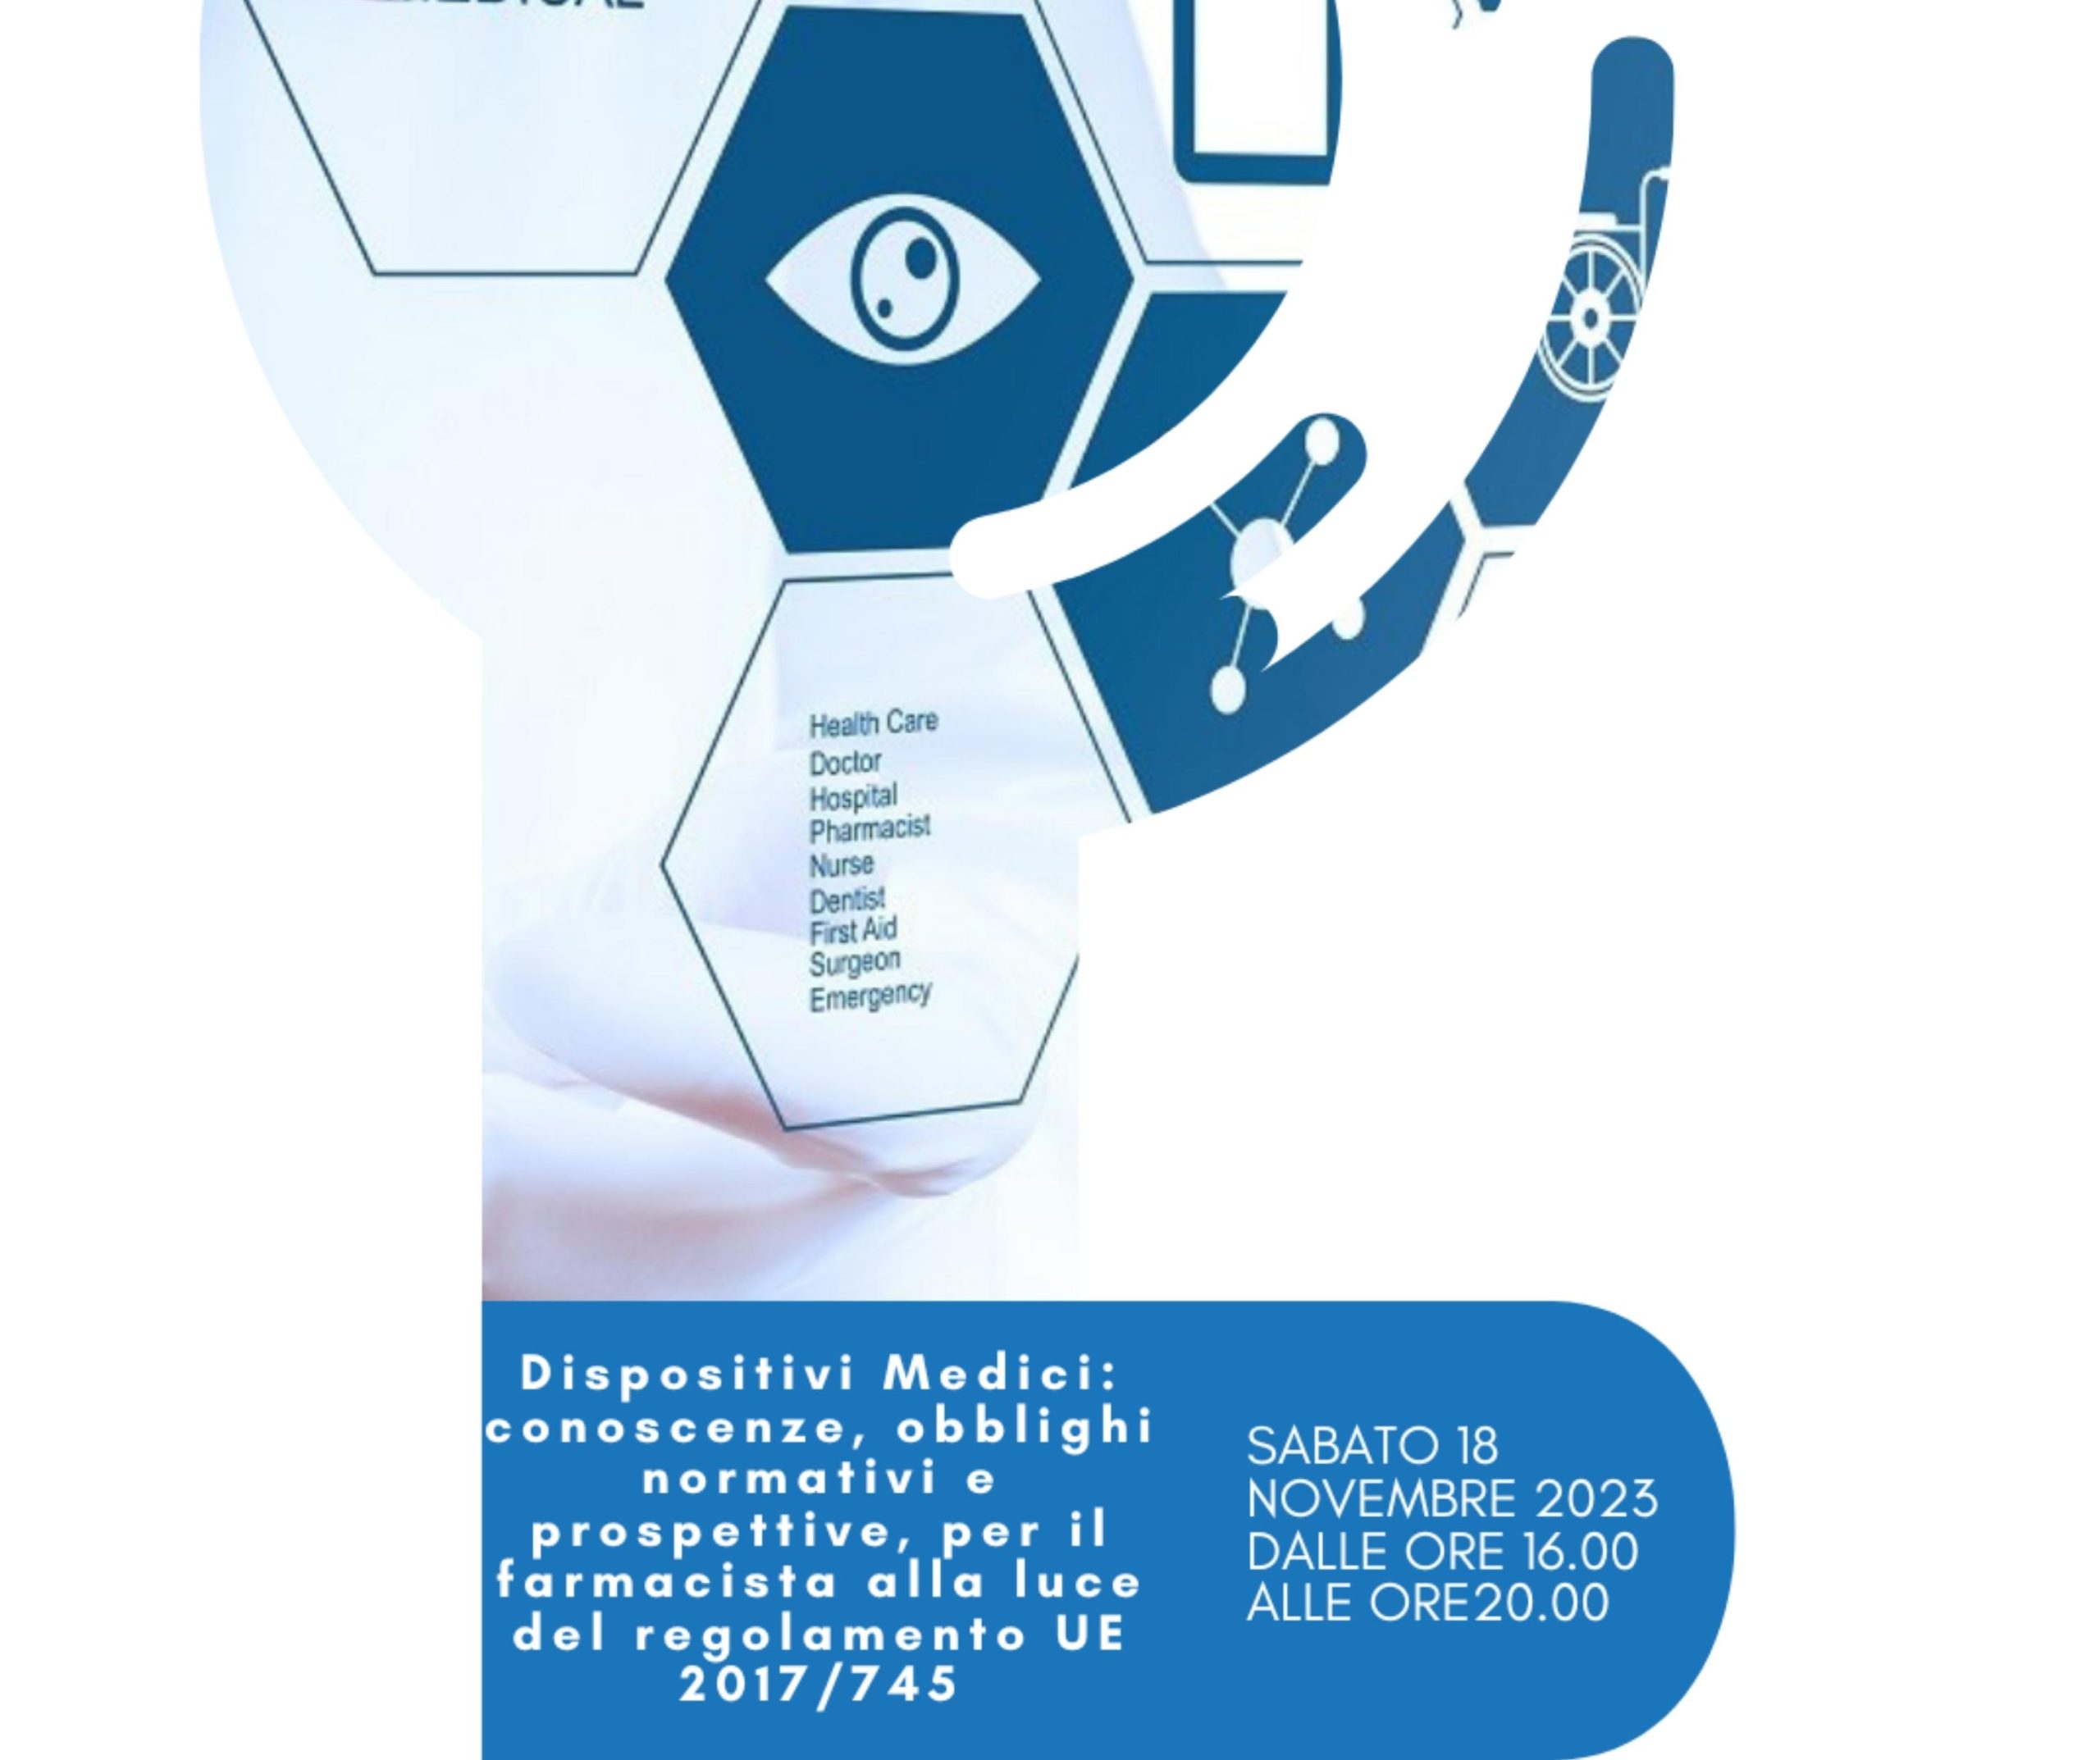 RES - Dispositivi Medici: conoscenze, obblighi normativi e prospettive, per il farmacista alla luce del regolamento UE 2017/745